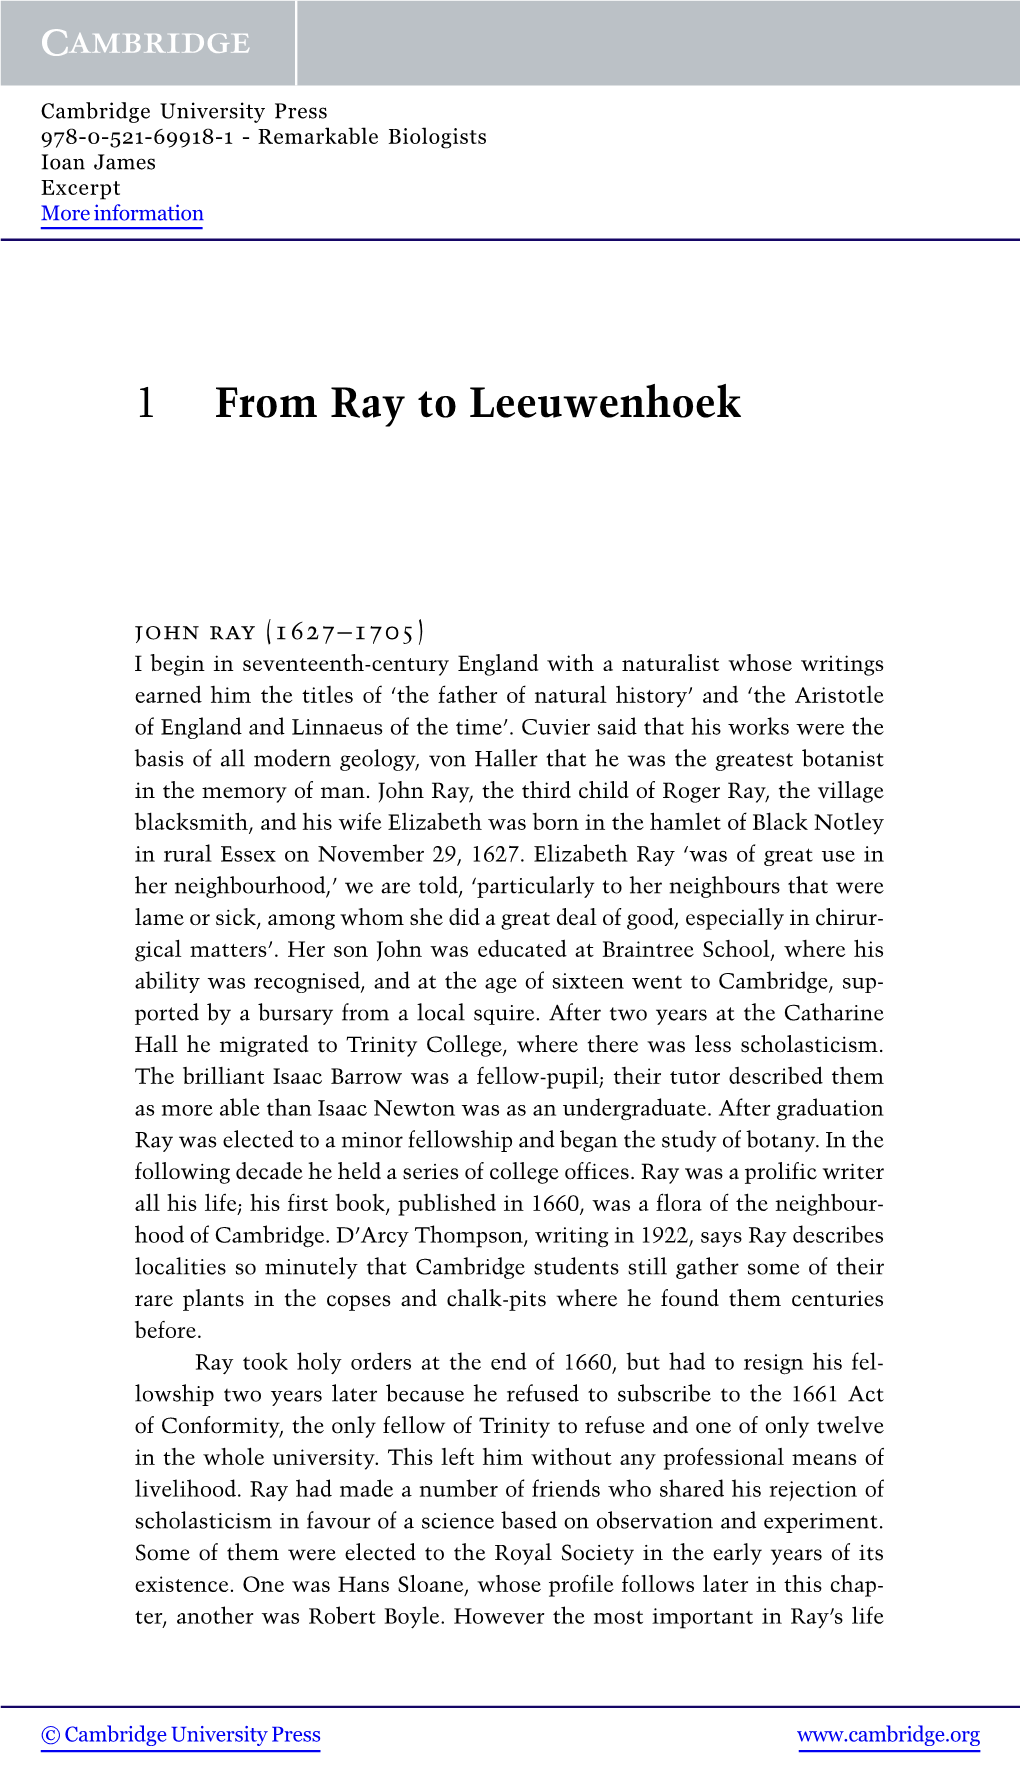 1 from Ray to Leeuwenhoek